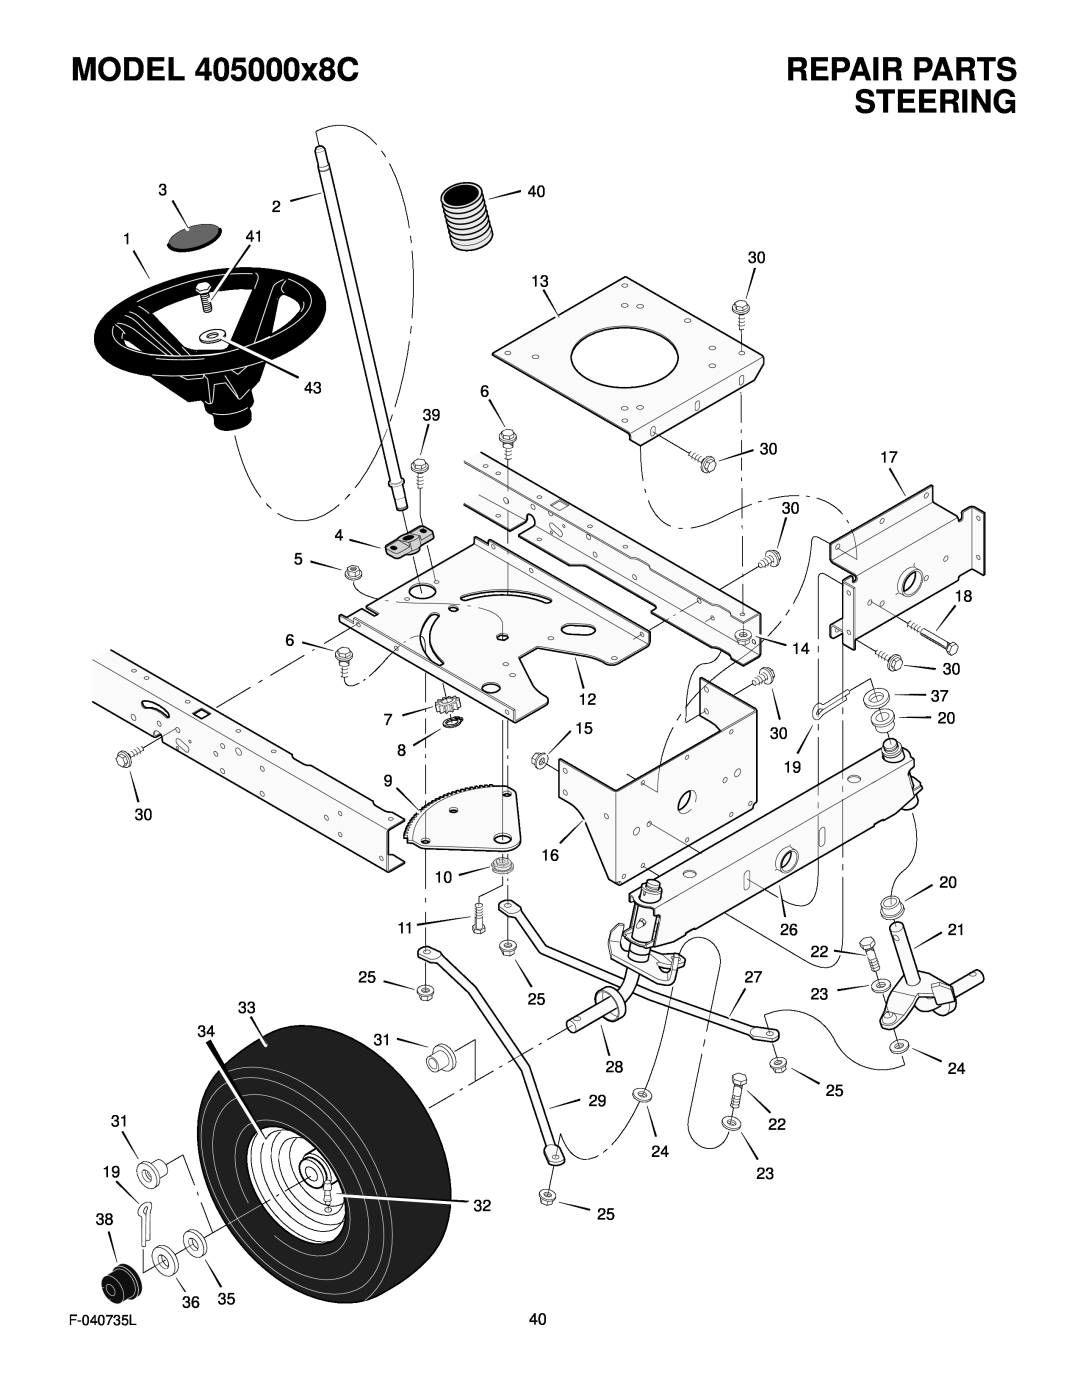 Murray manual Steering, MODEL 405000x8C, Repair Parts, F-040735L 